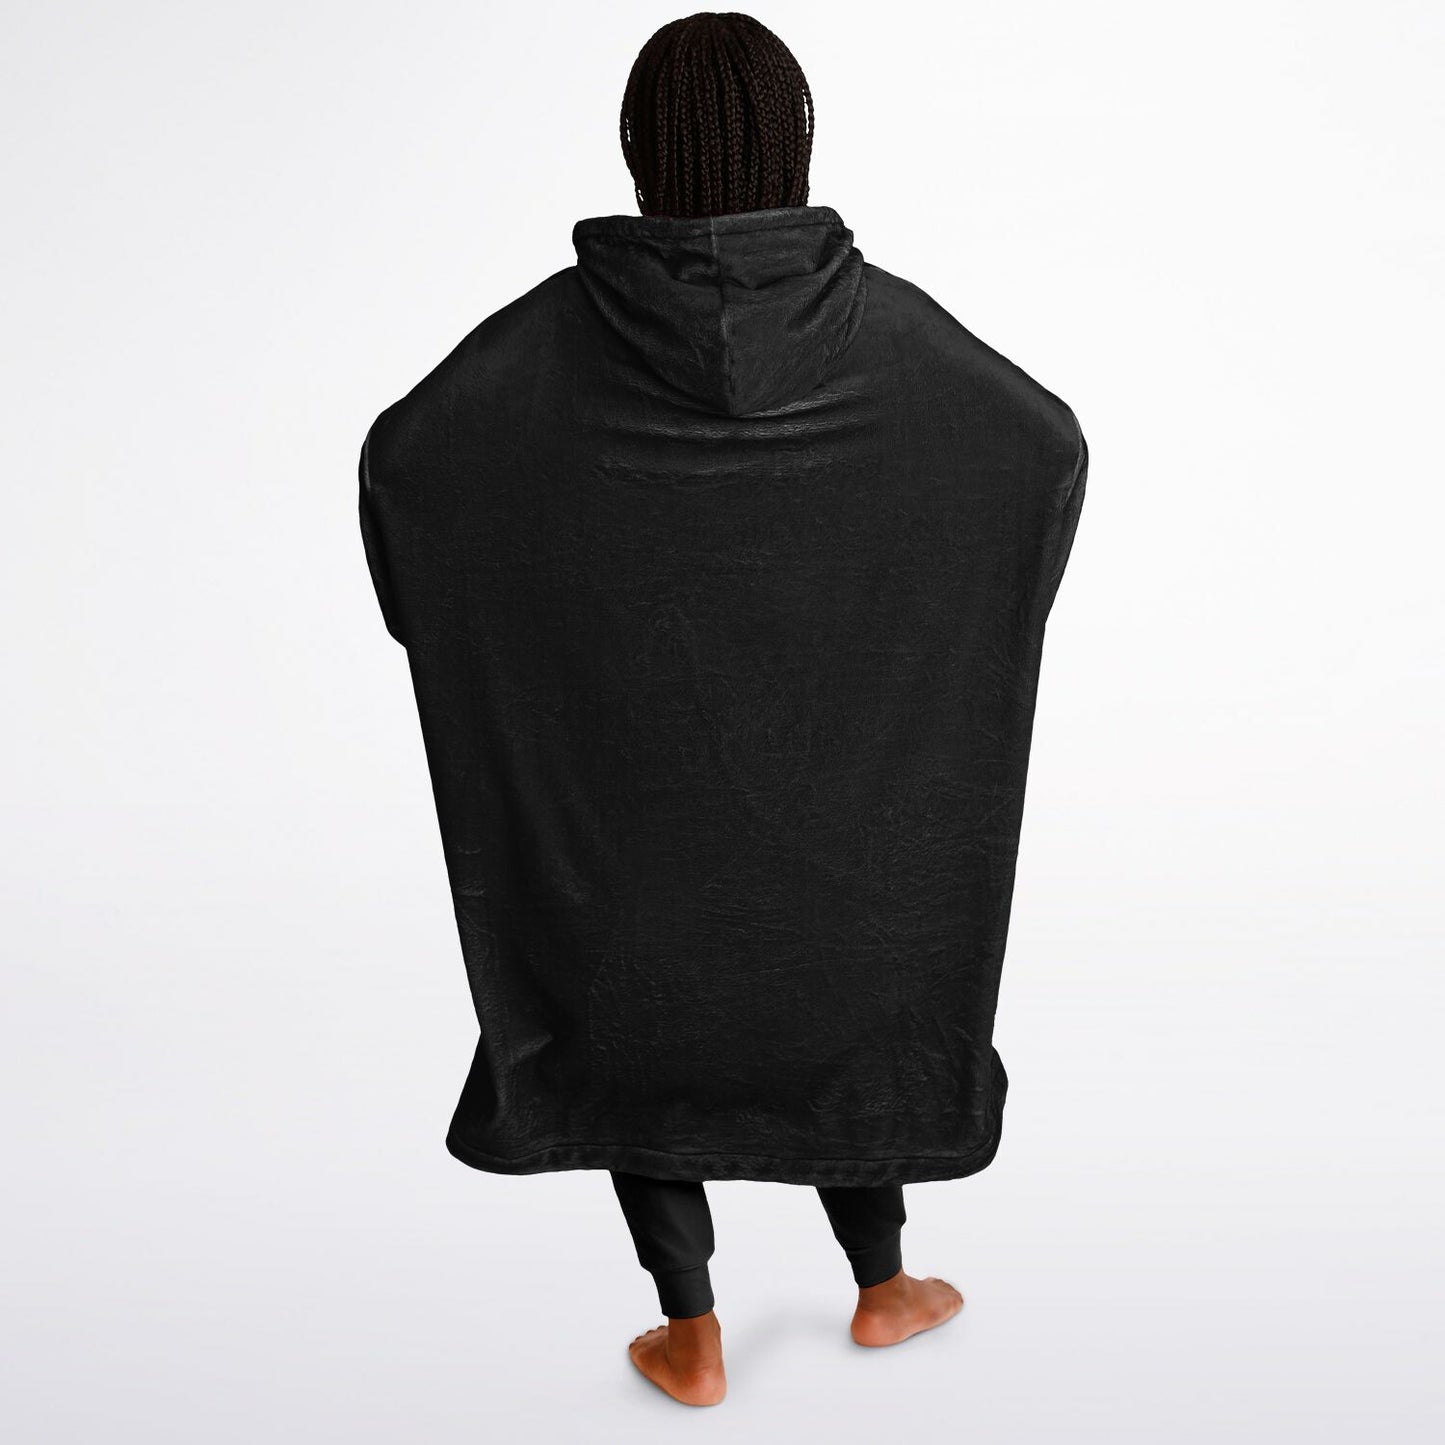 Kozy Komfort Blanket Hoodie - Black